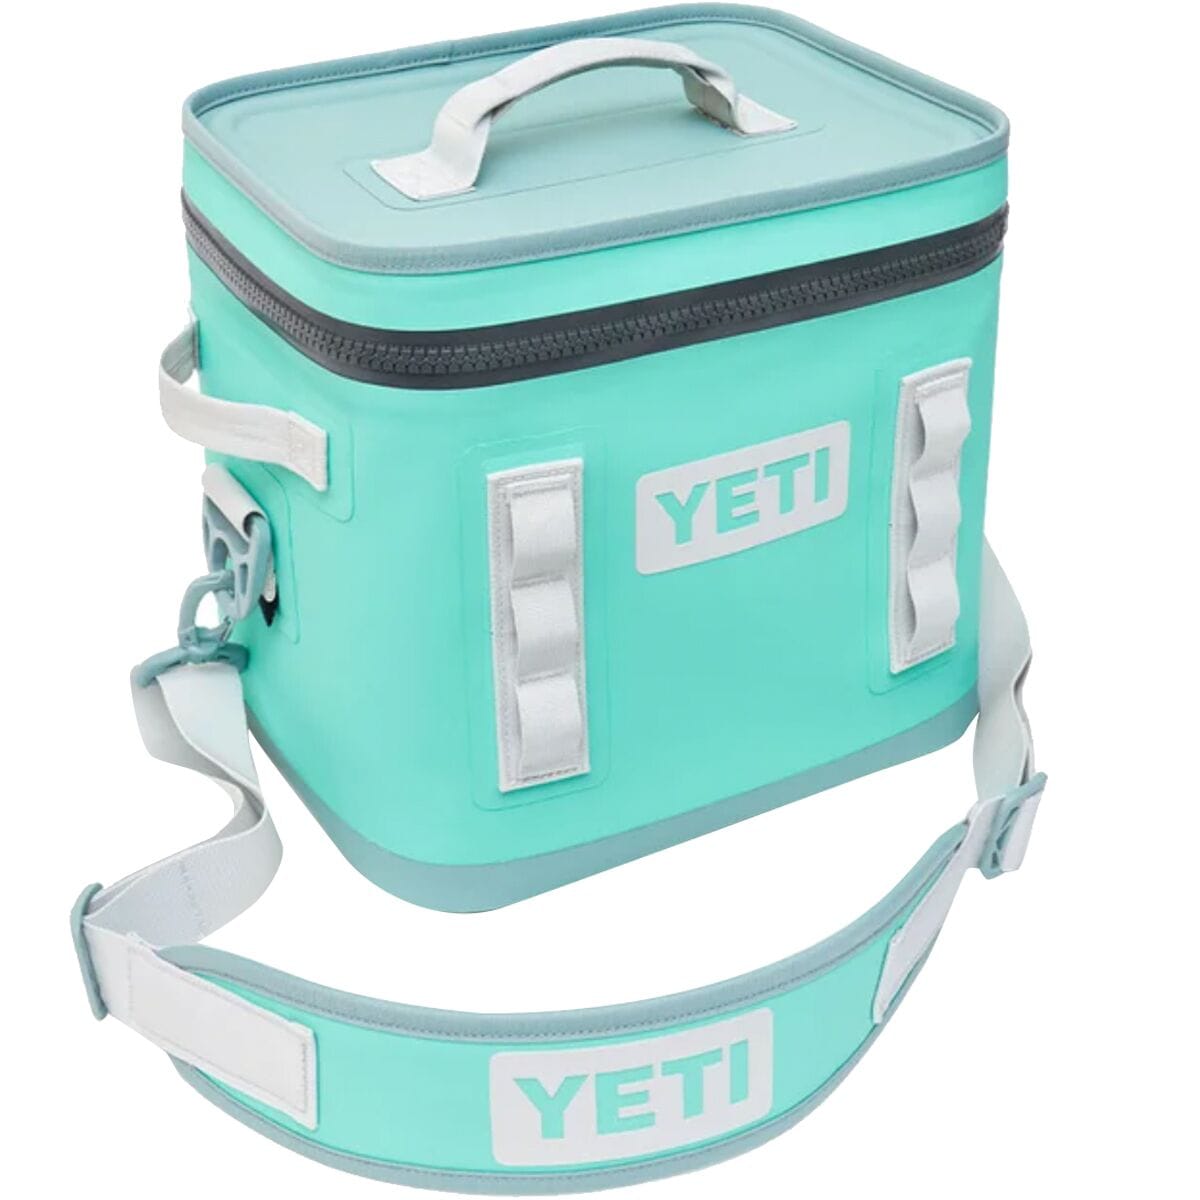 Yeti - Hopper Flip 12 Soft Cooler - Camp Green